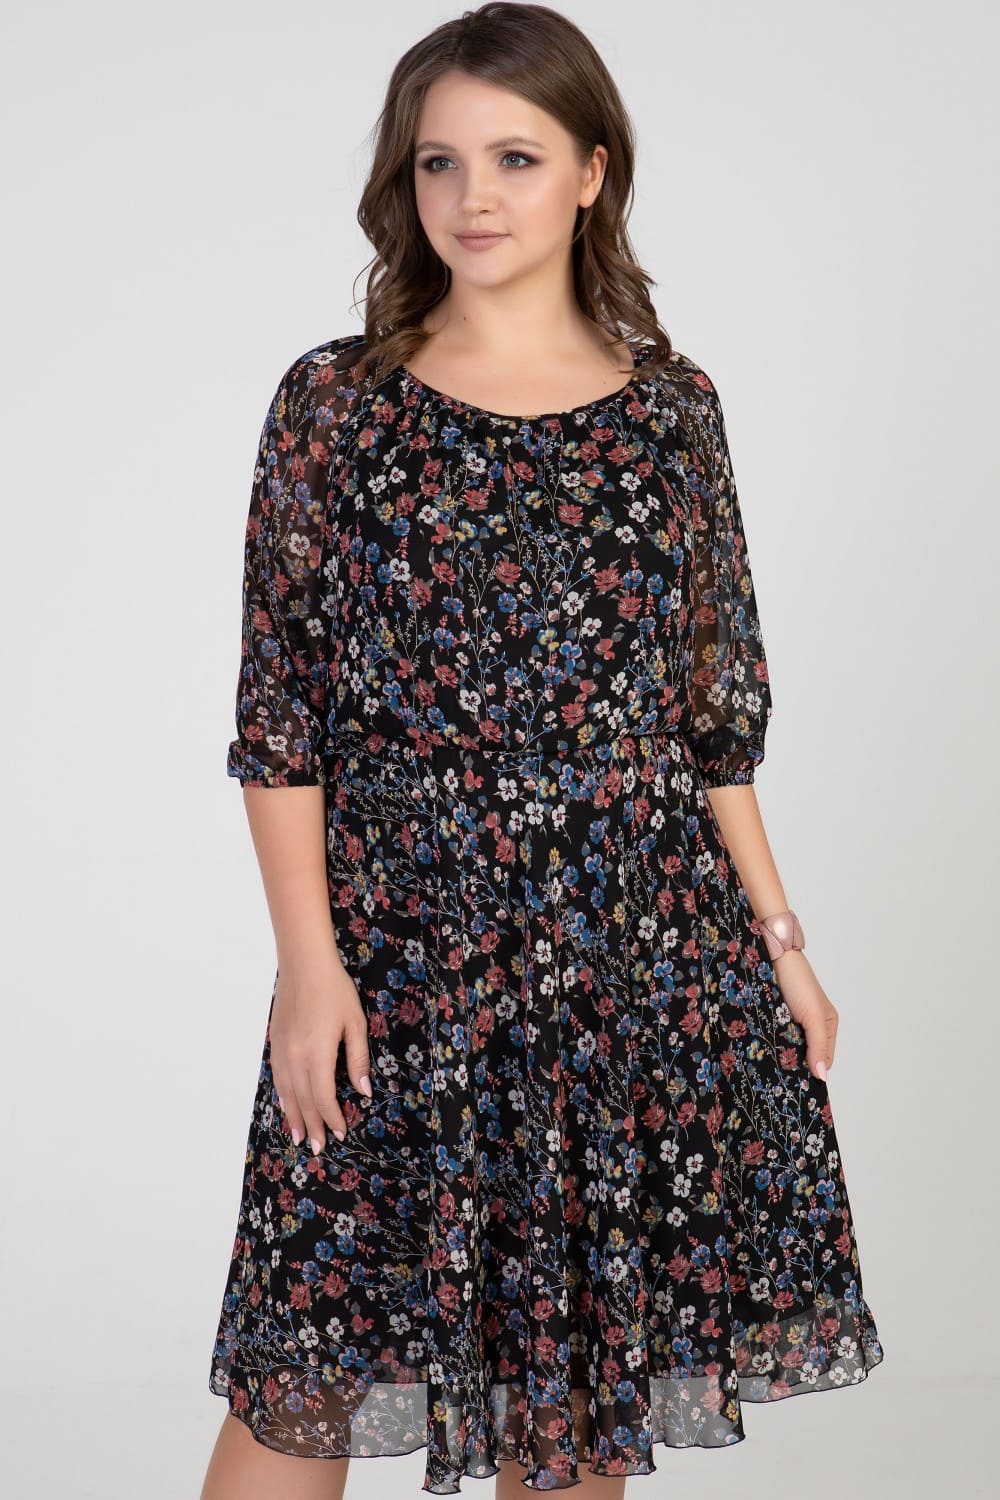 Отрезное шифоновое платье с коротким рукавом, цветы на черном